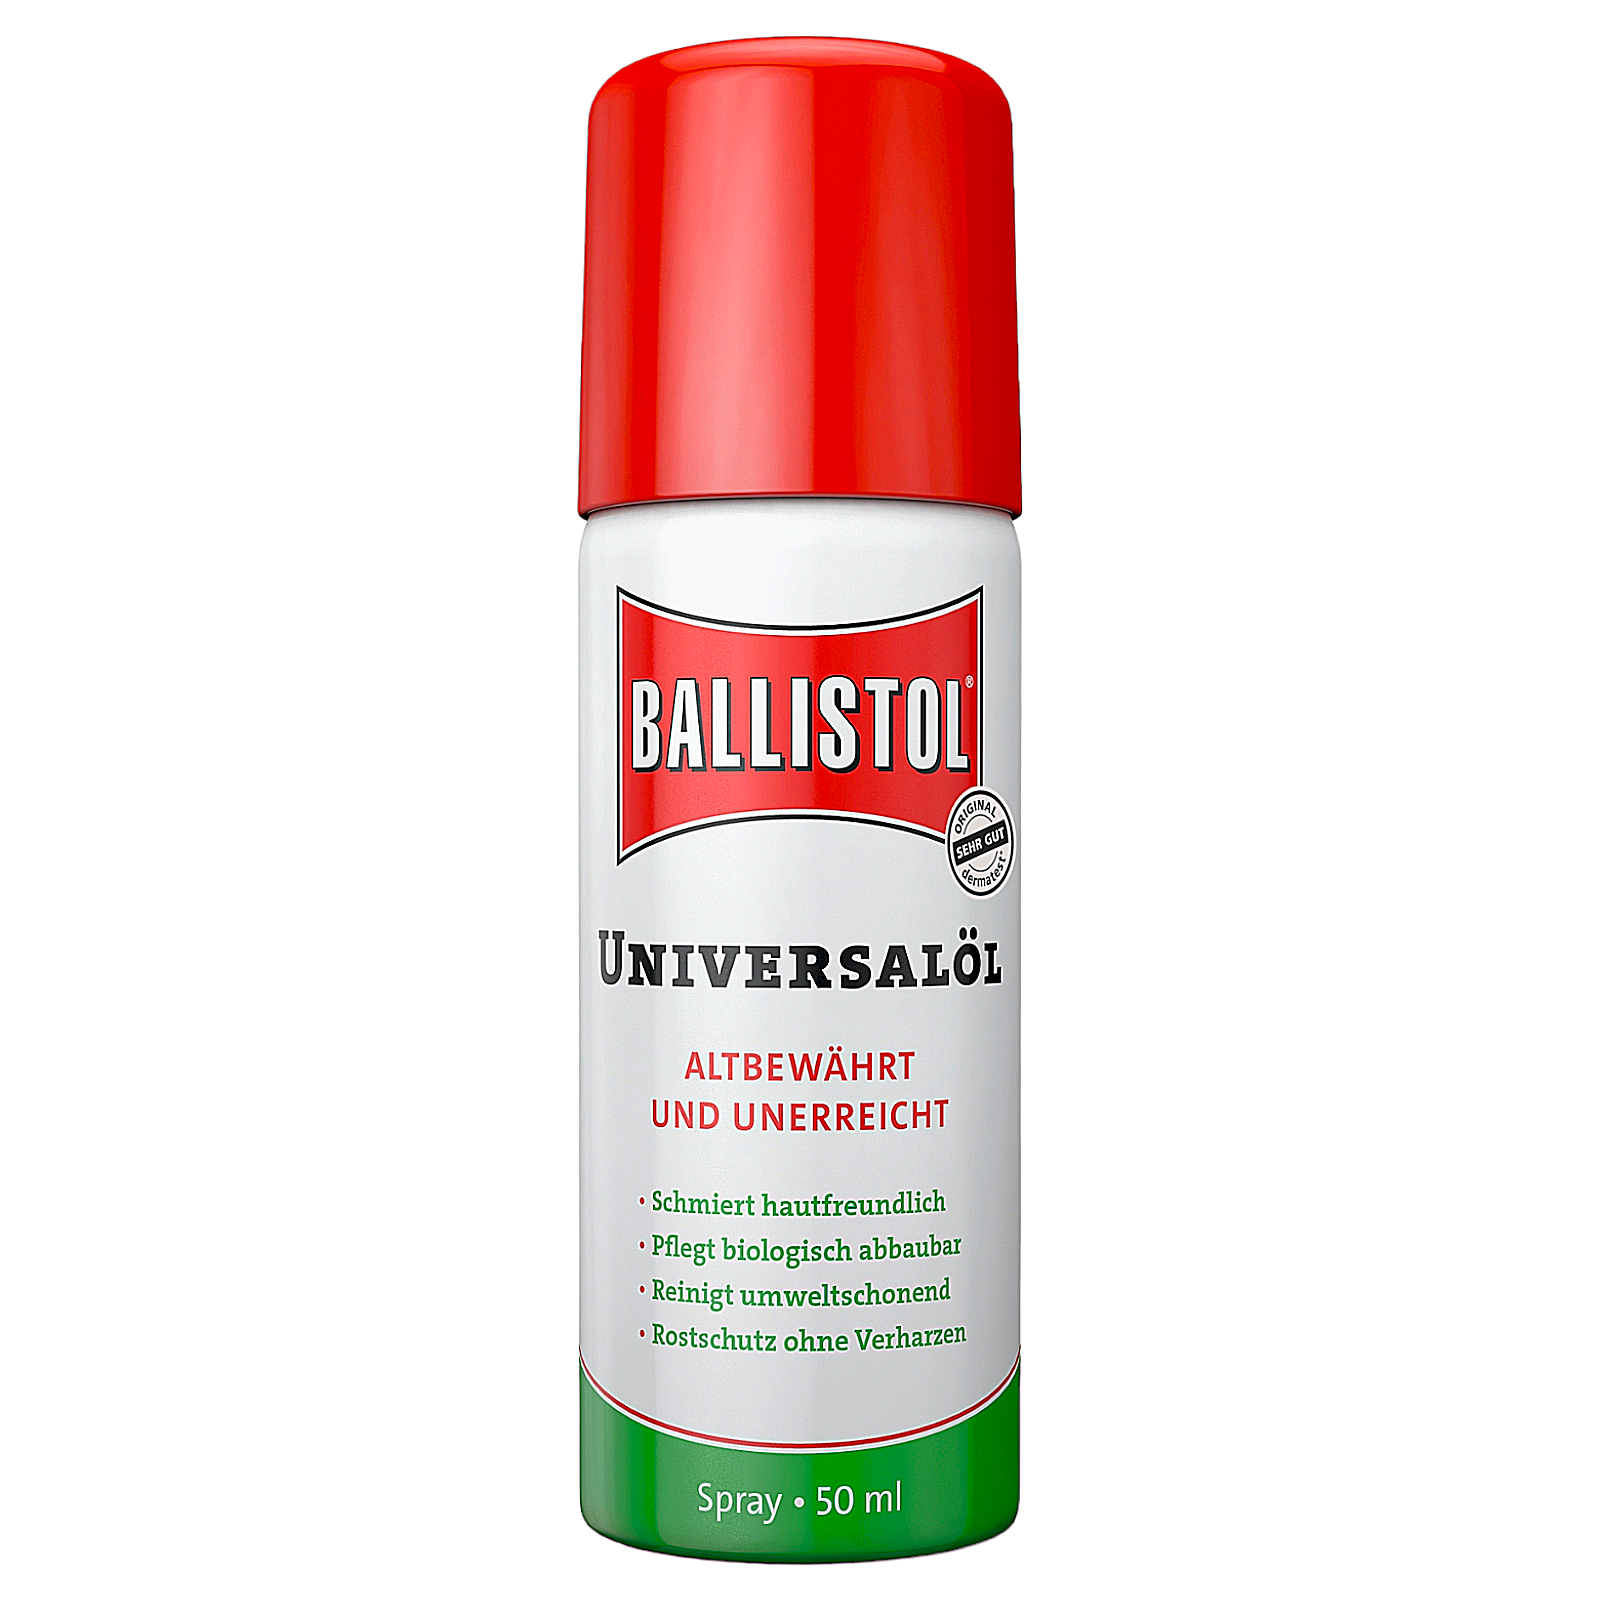 Ballistol Universalöl Pflegeöl Waffenöl Rostschutz Reinigung Schmier Spray